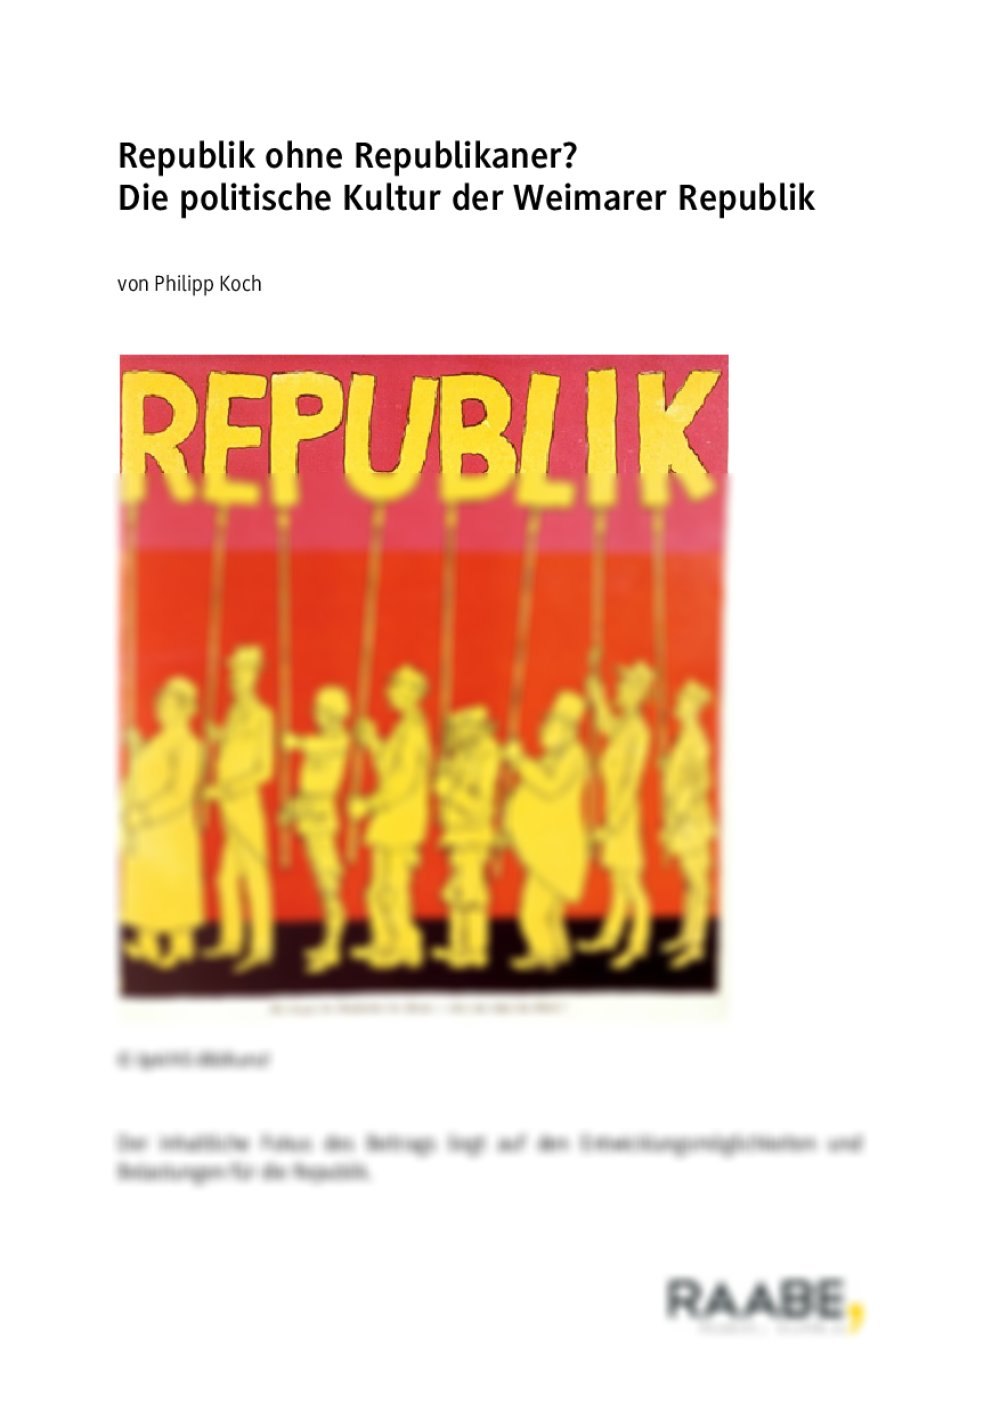 Die politische Kultur der Weimarer Republik - Seite 1